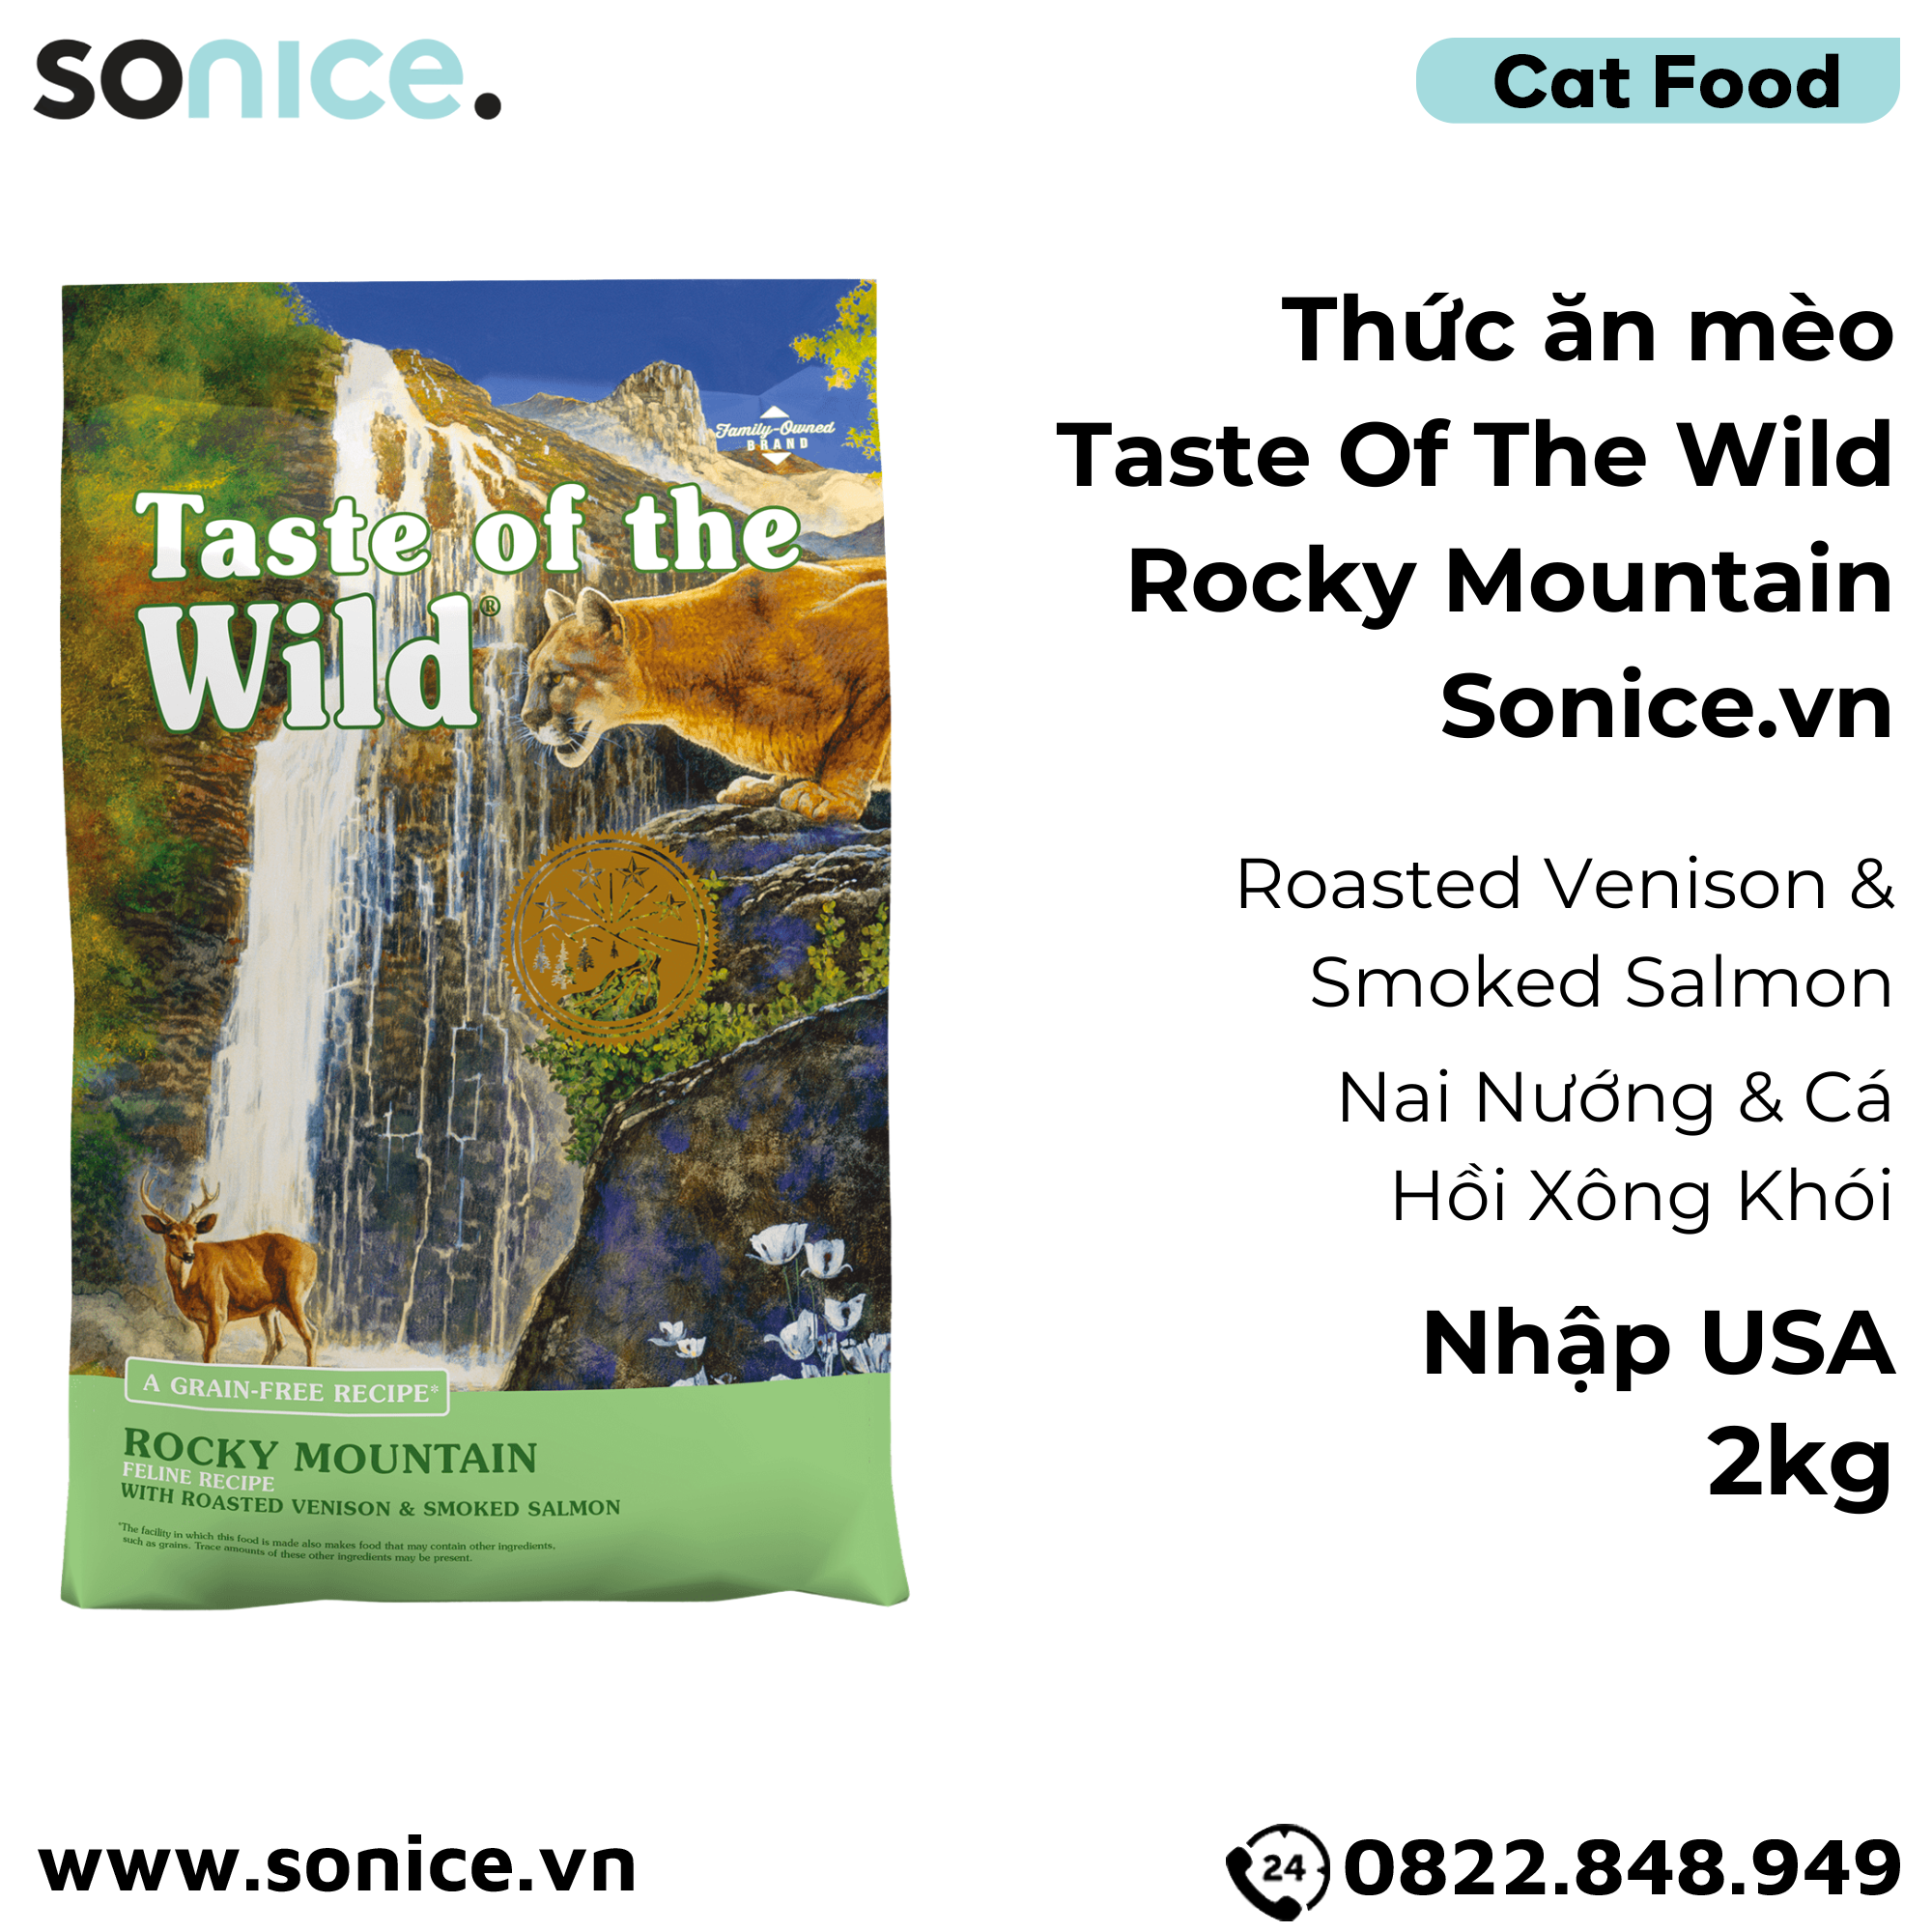  Thức ăn mèo Taste Of The Wild Rocky Mountain 2kg - Roasted Venison & Smoked Salmon, Nai Nướng & Cá Hồi Xông Khói - mèo mẹ & mèo con, nhập USA SONICE. 